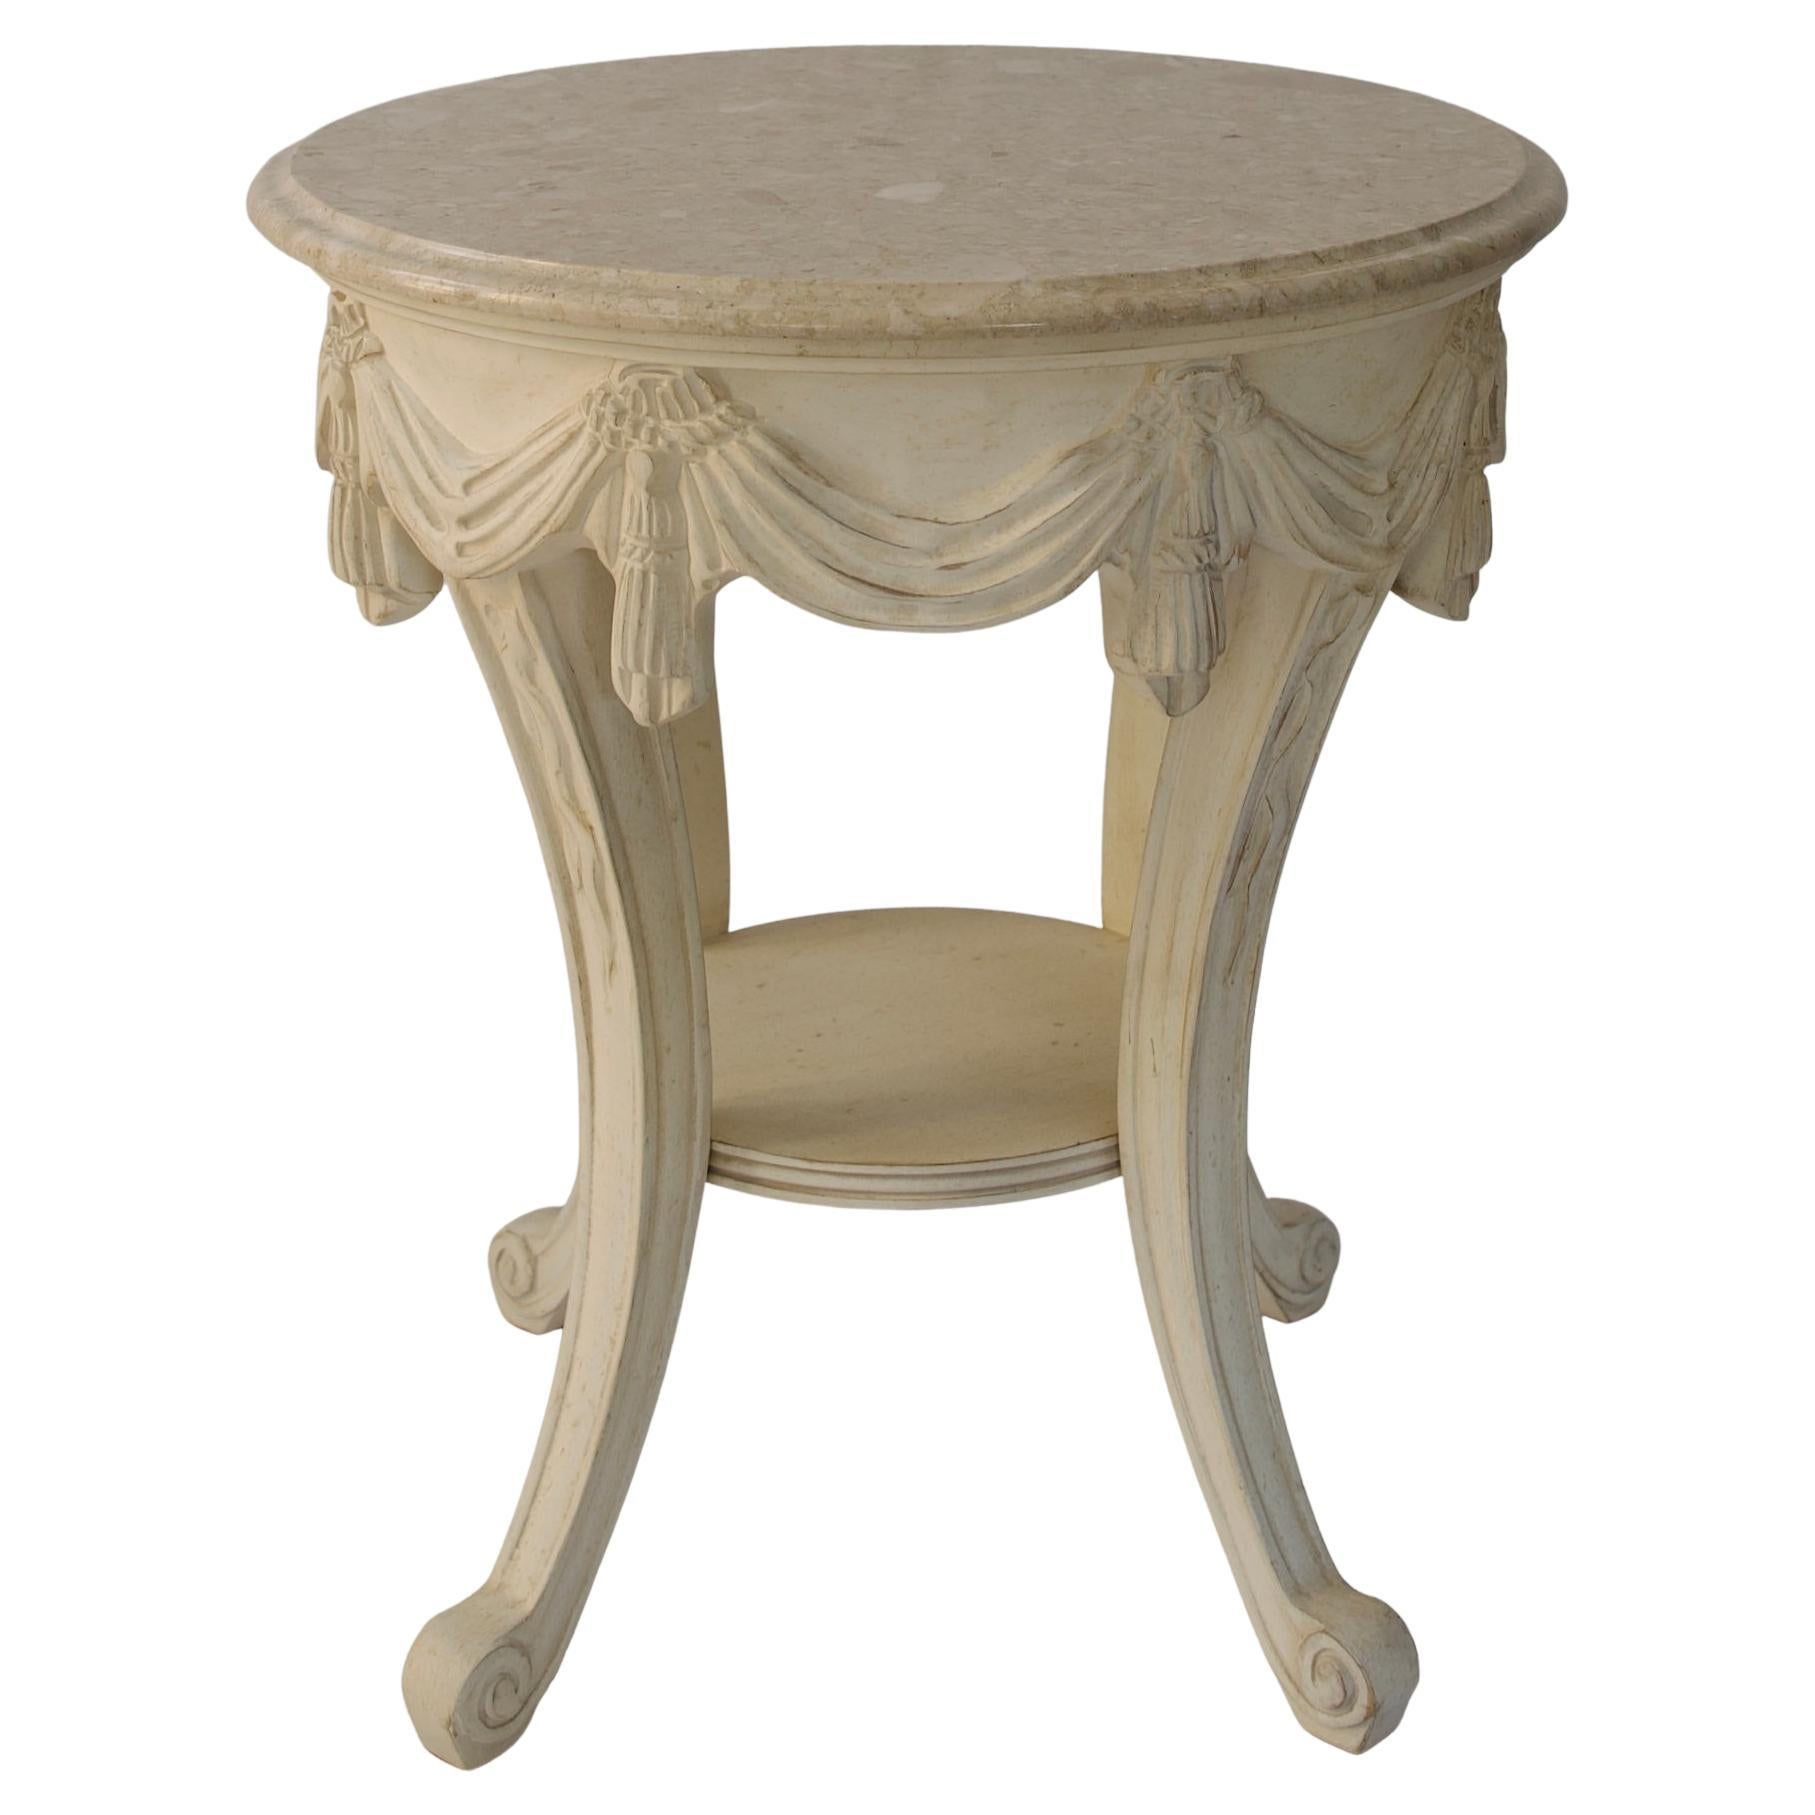 Table d'appoint de style Louis XVI avec plateau en marbre italien, table d'appoint Powder Room